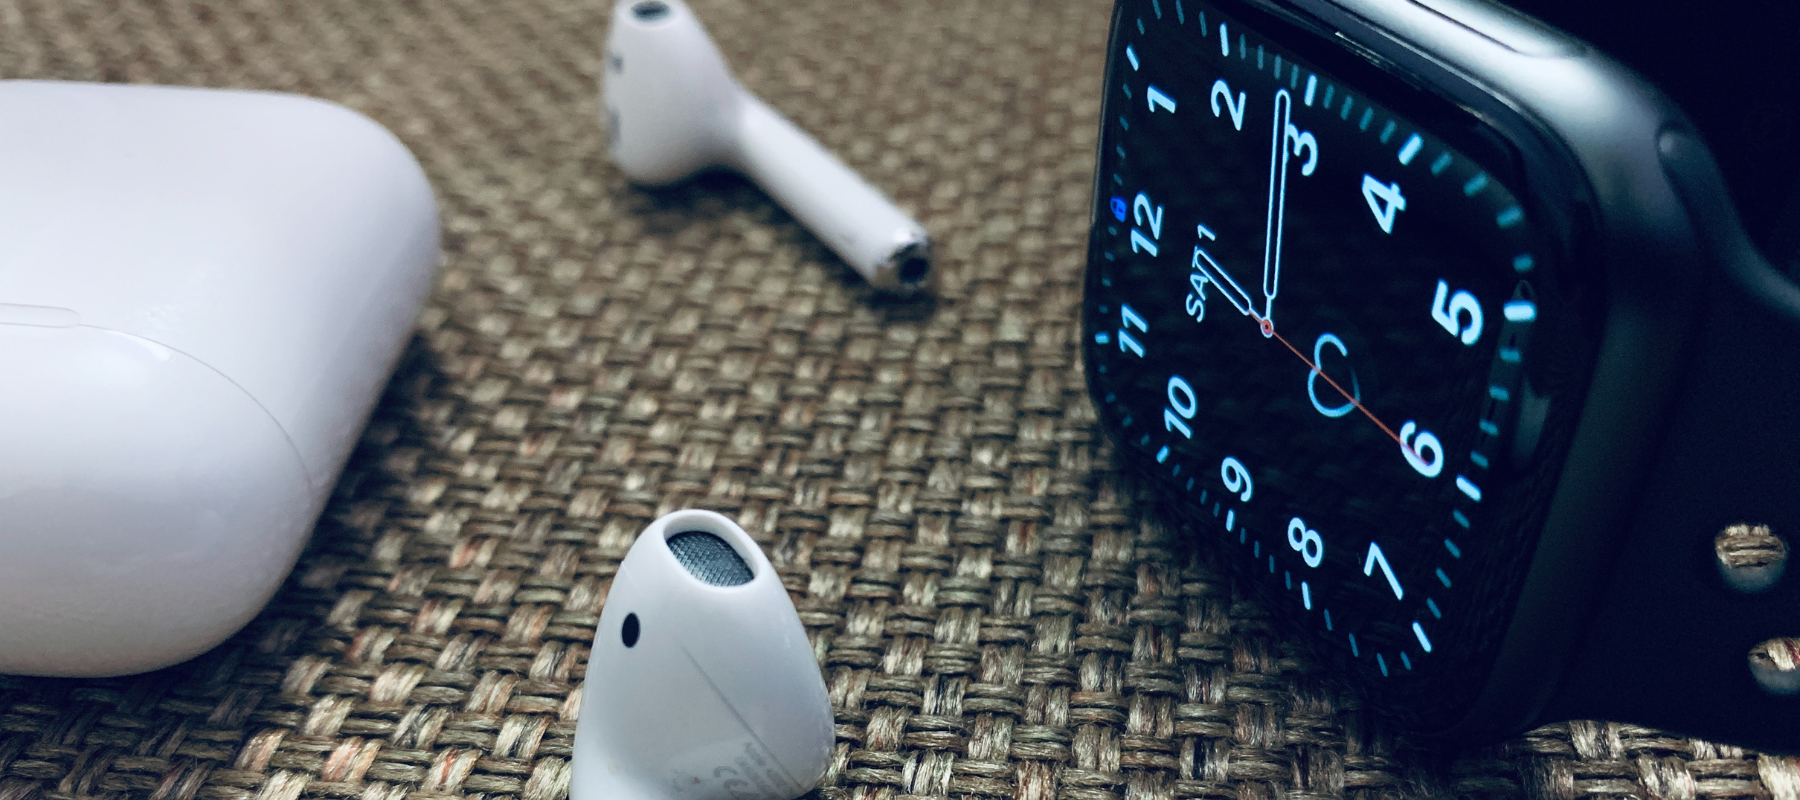 ¿Cómo conectar auriculares al Apple Watch?